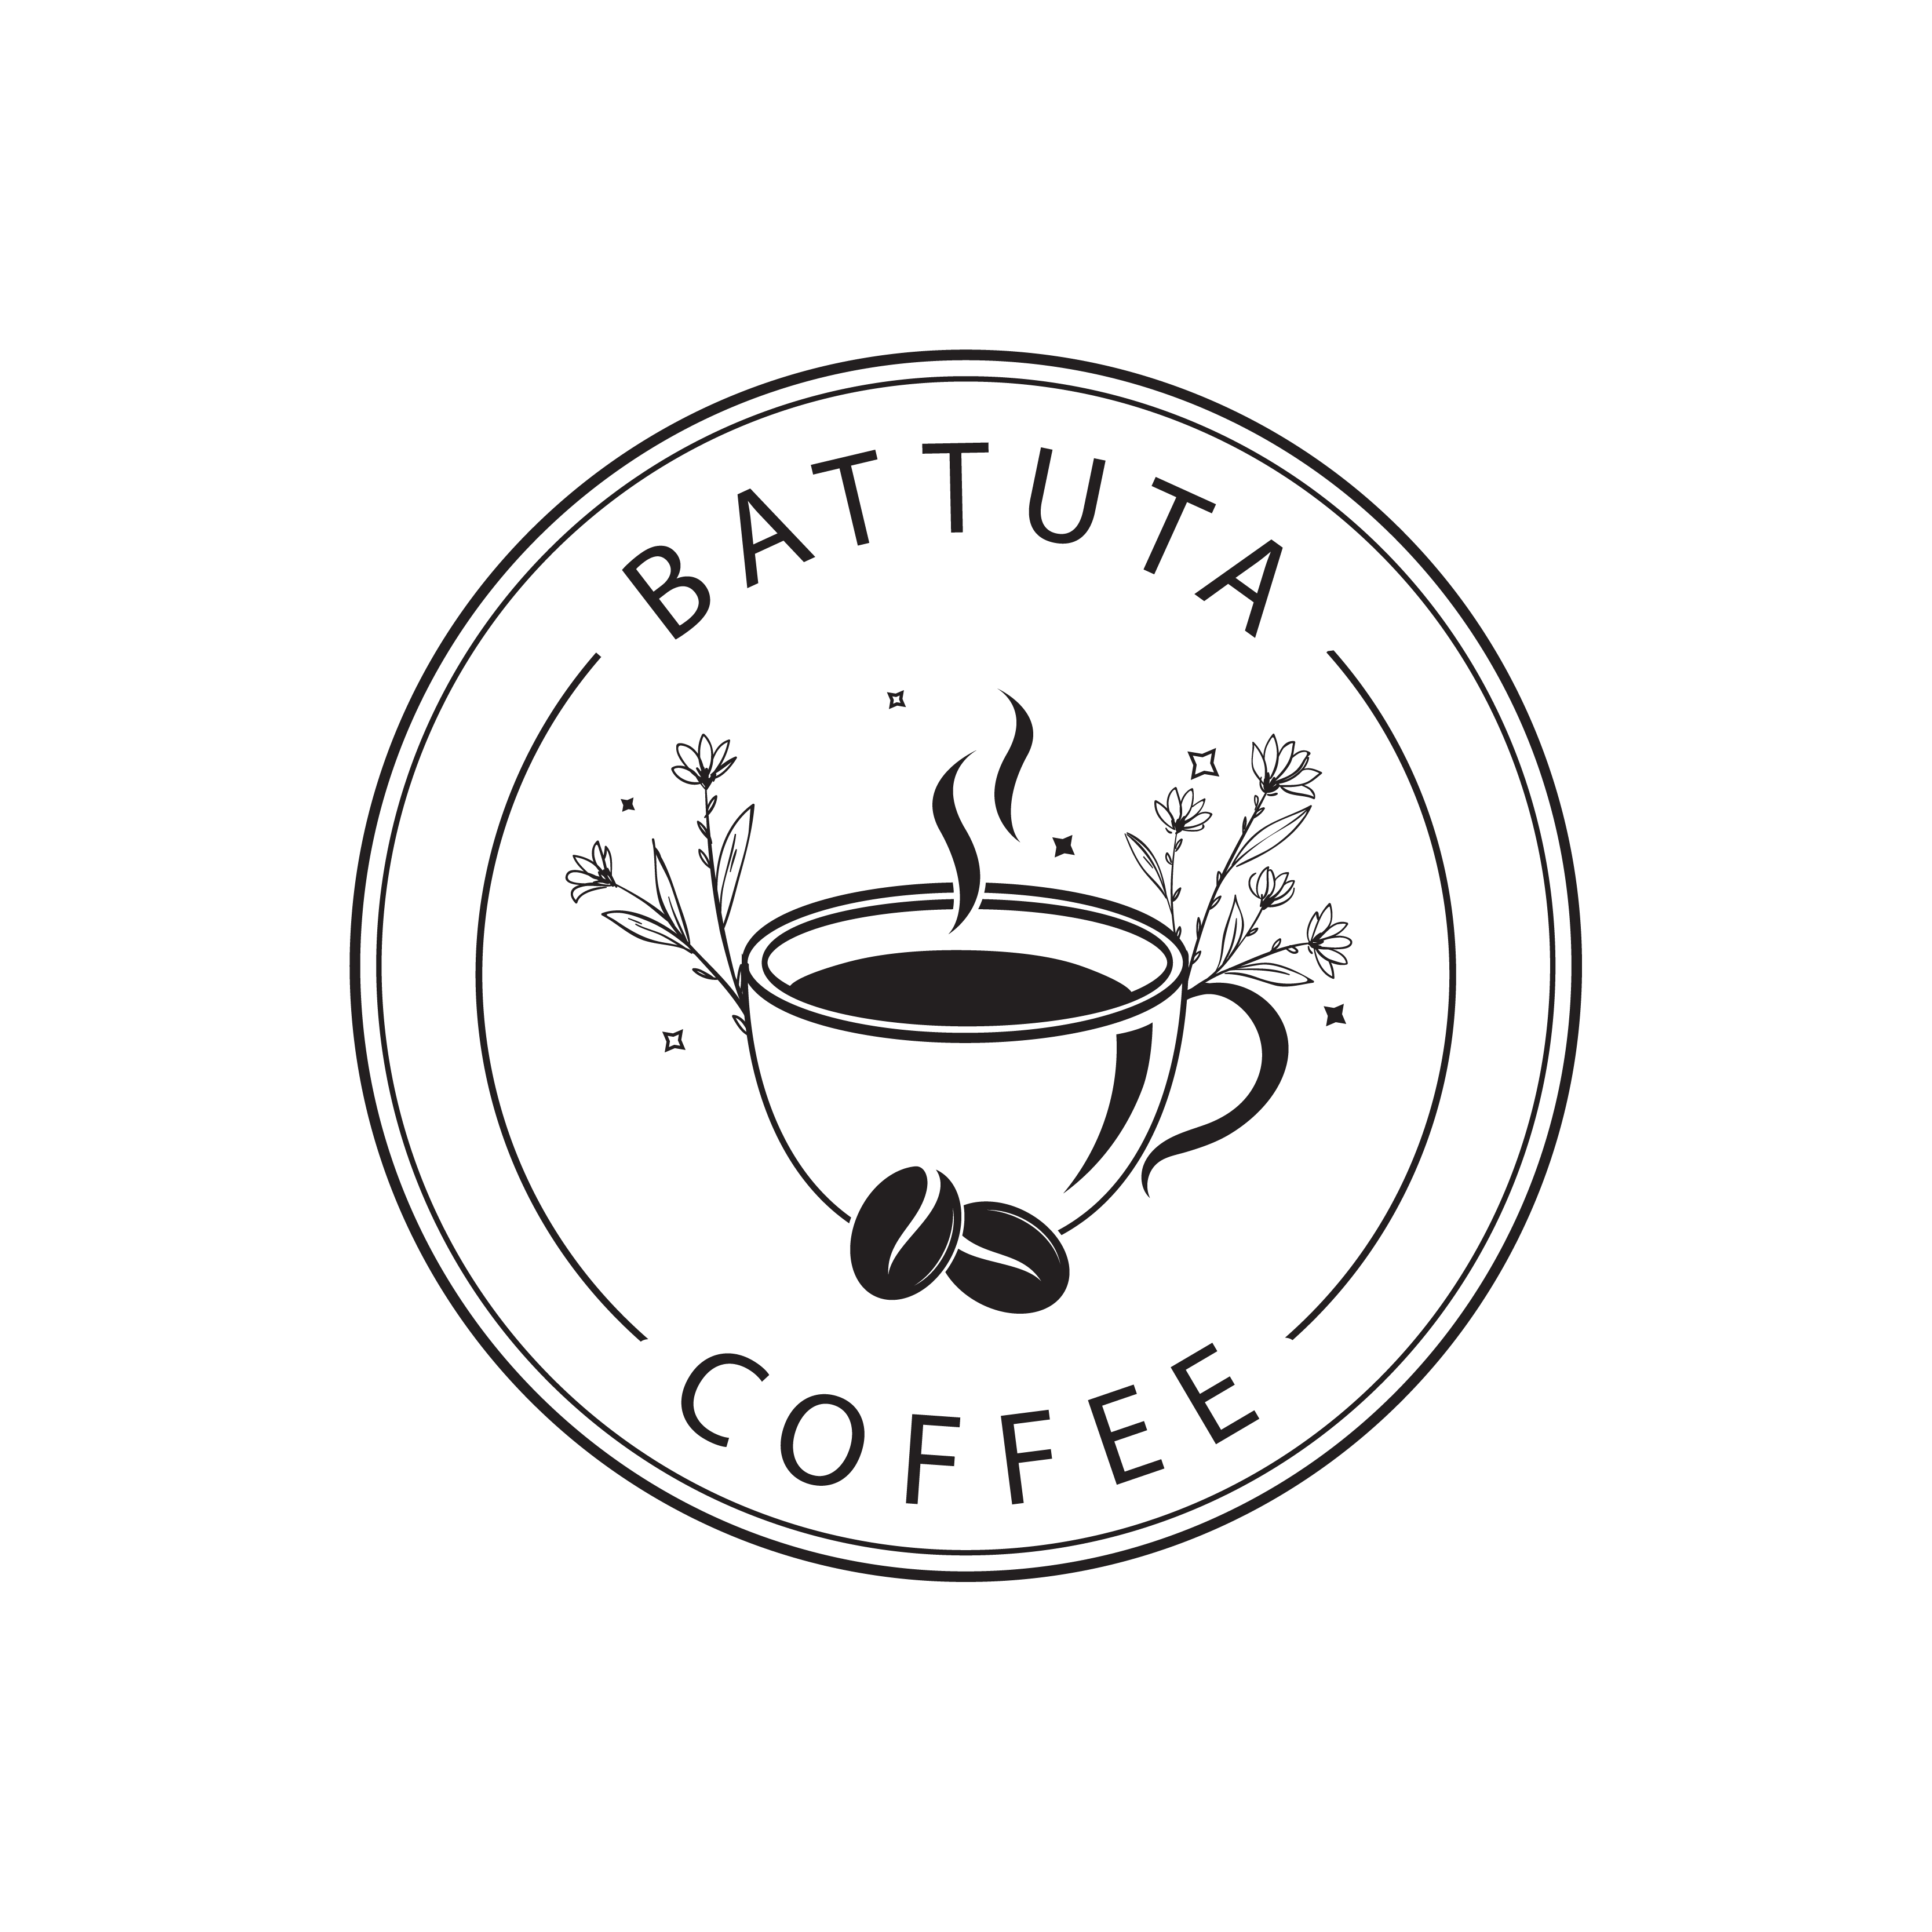 Battuta Coffee